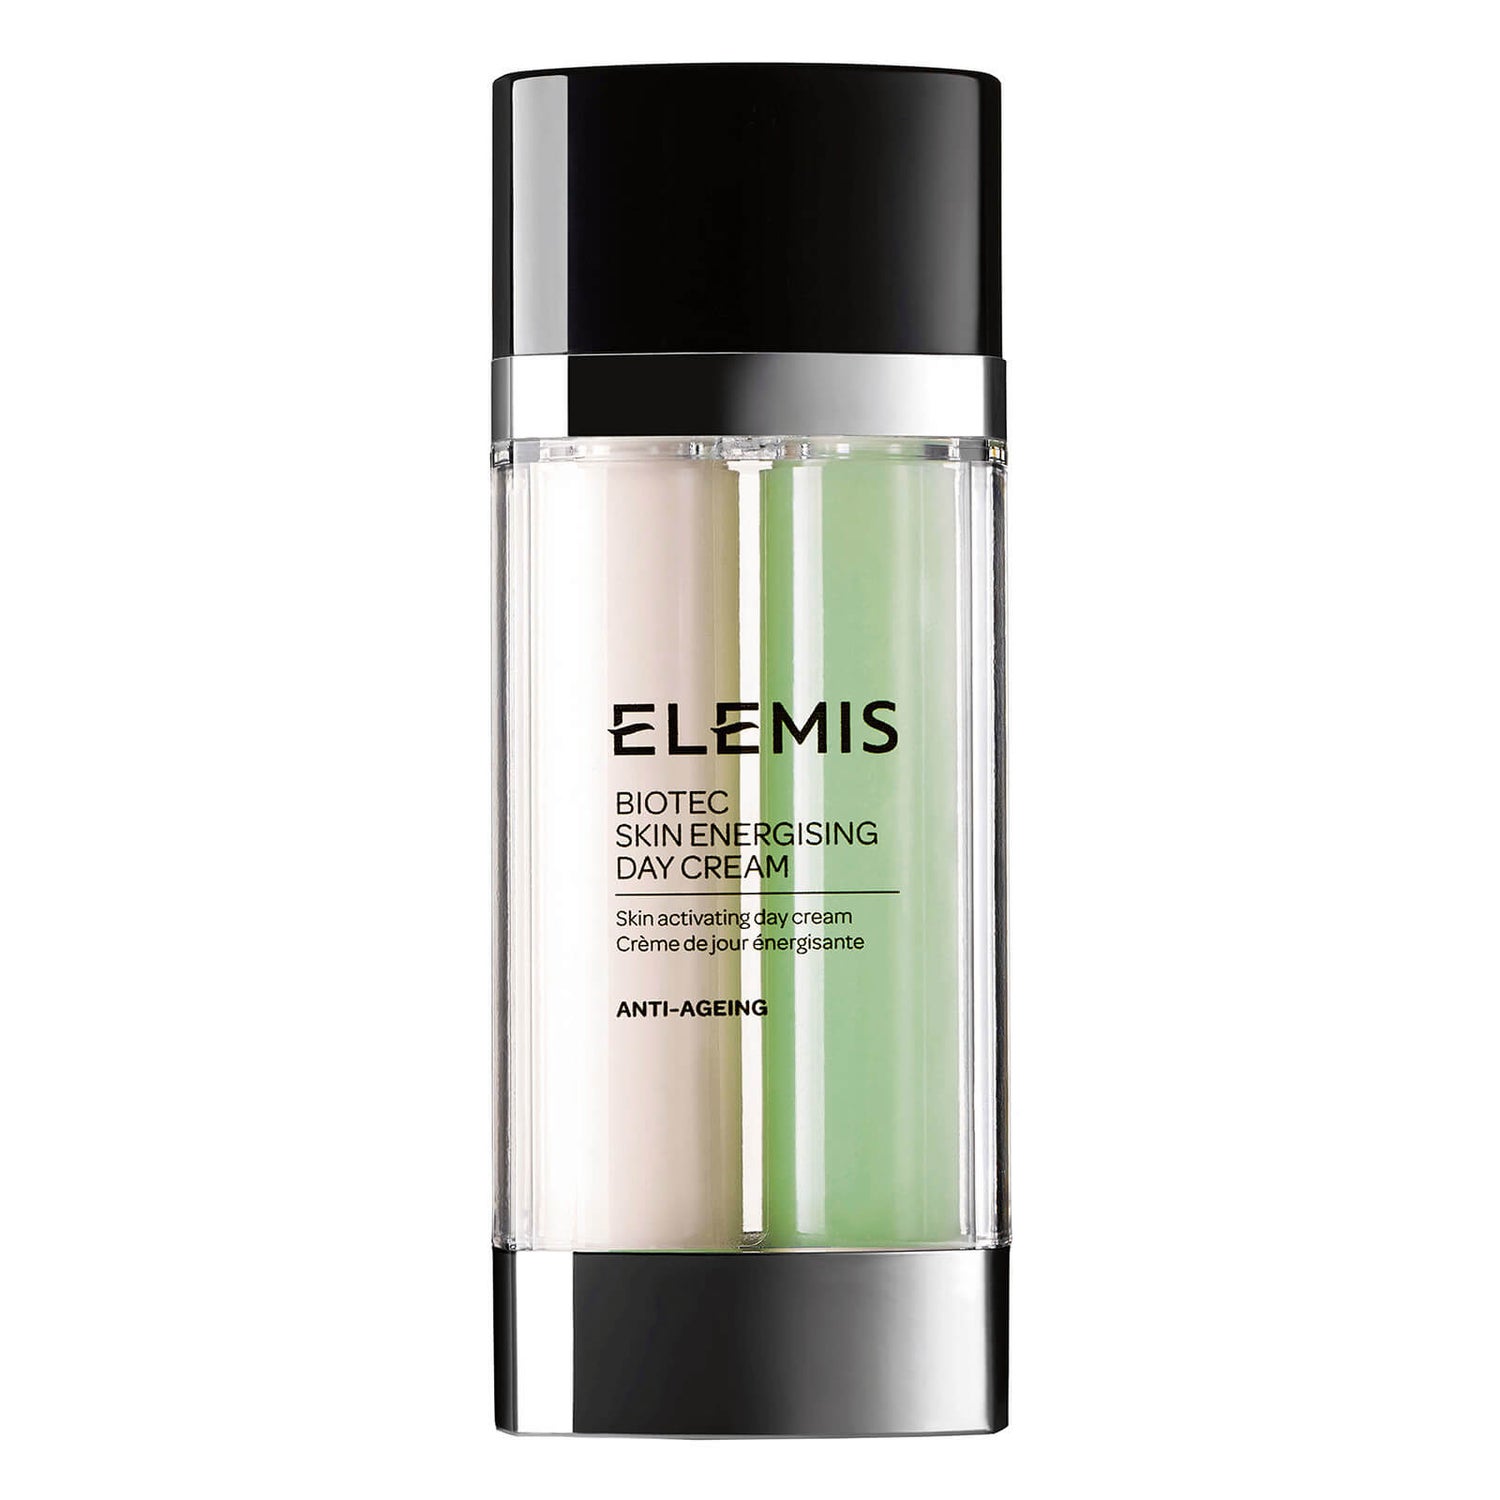 Elemis BIOTEC Skin Energising Crema Giorno 30ml